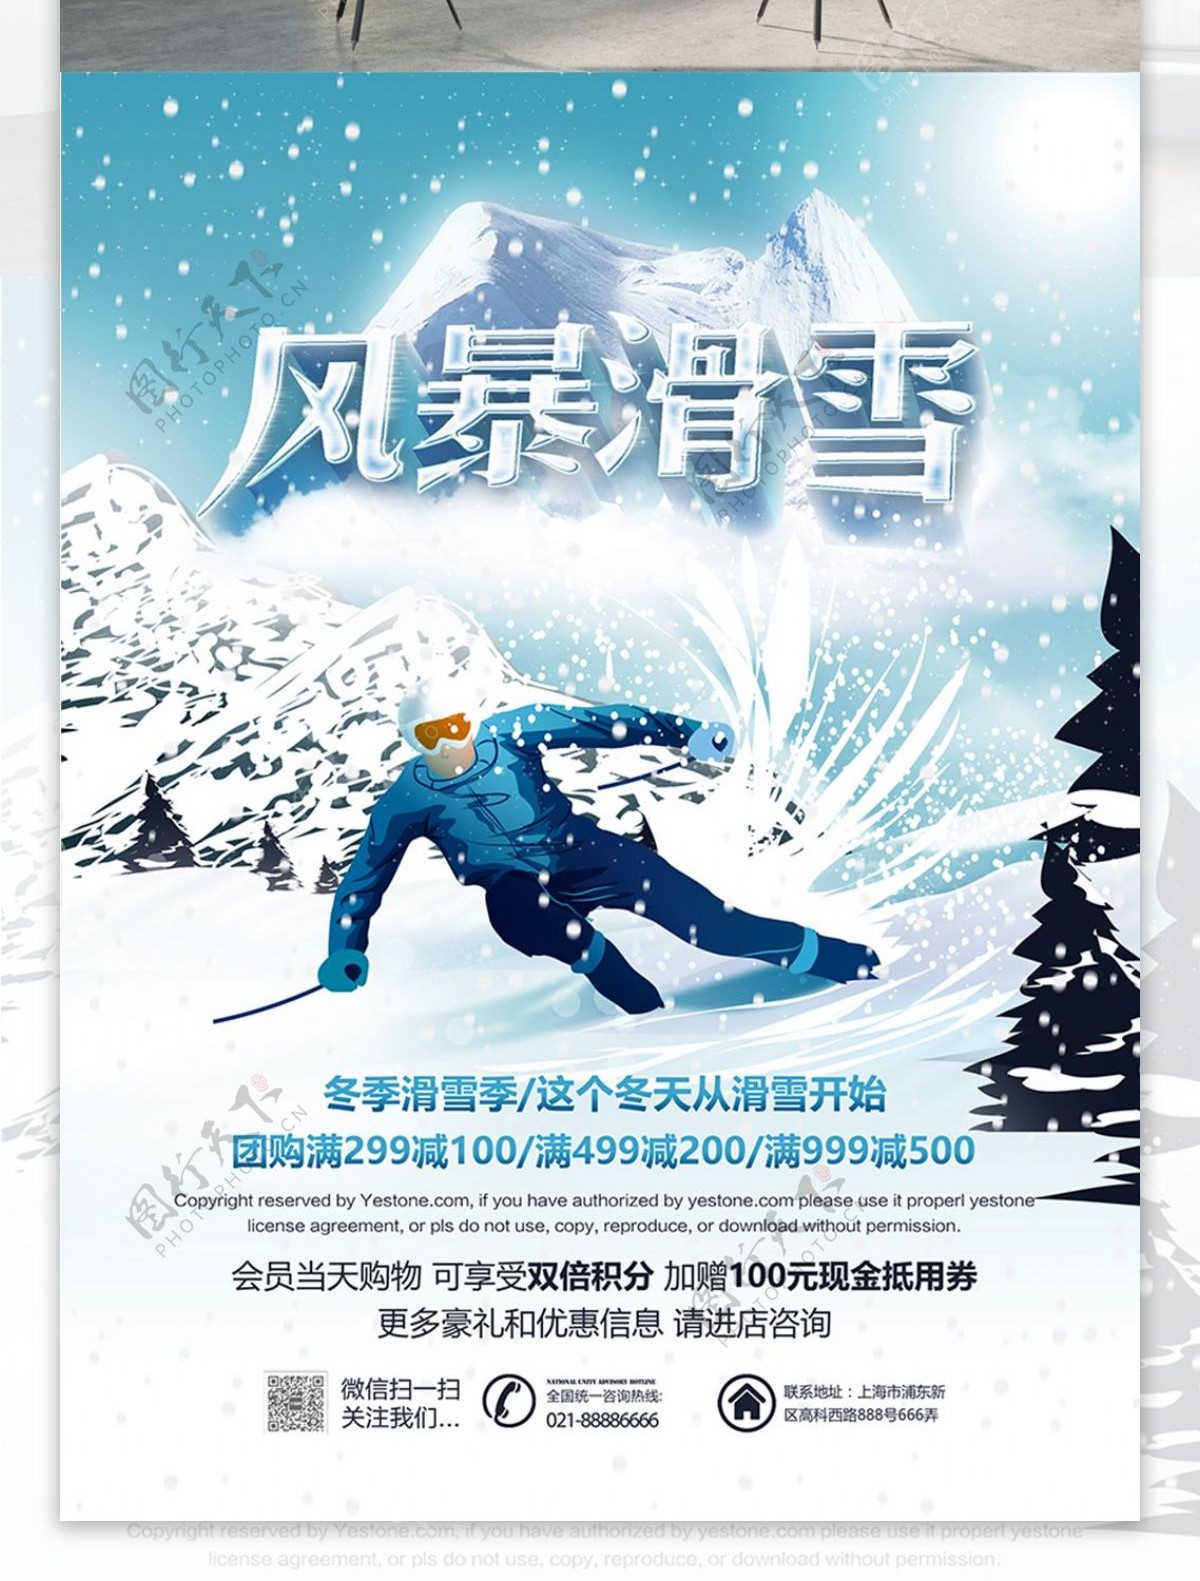 冬季风暴滑雪促销活动海报PSD源文件